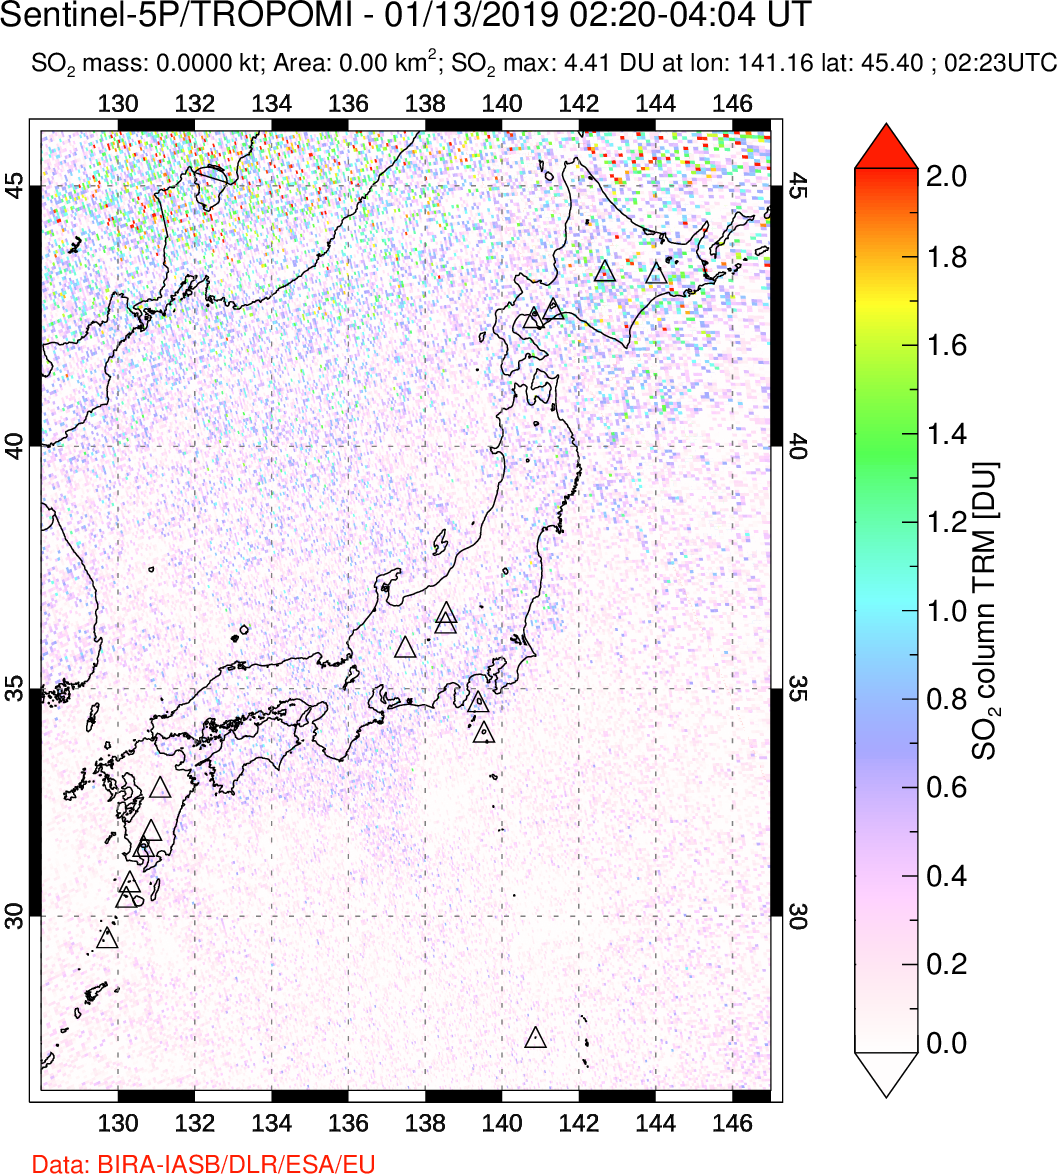 A sulfur dioxide image over Japan on Jan 13, 2019.